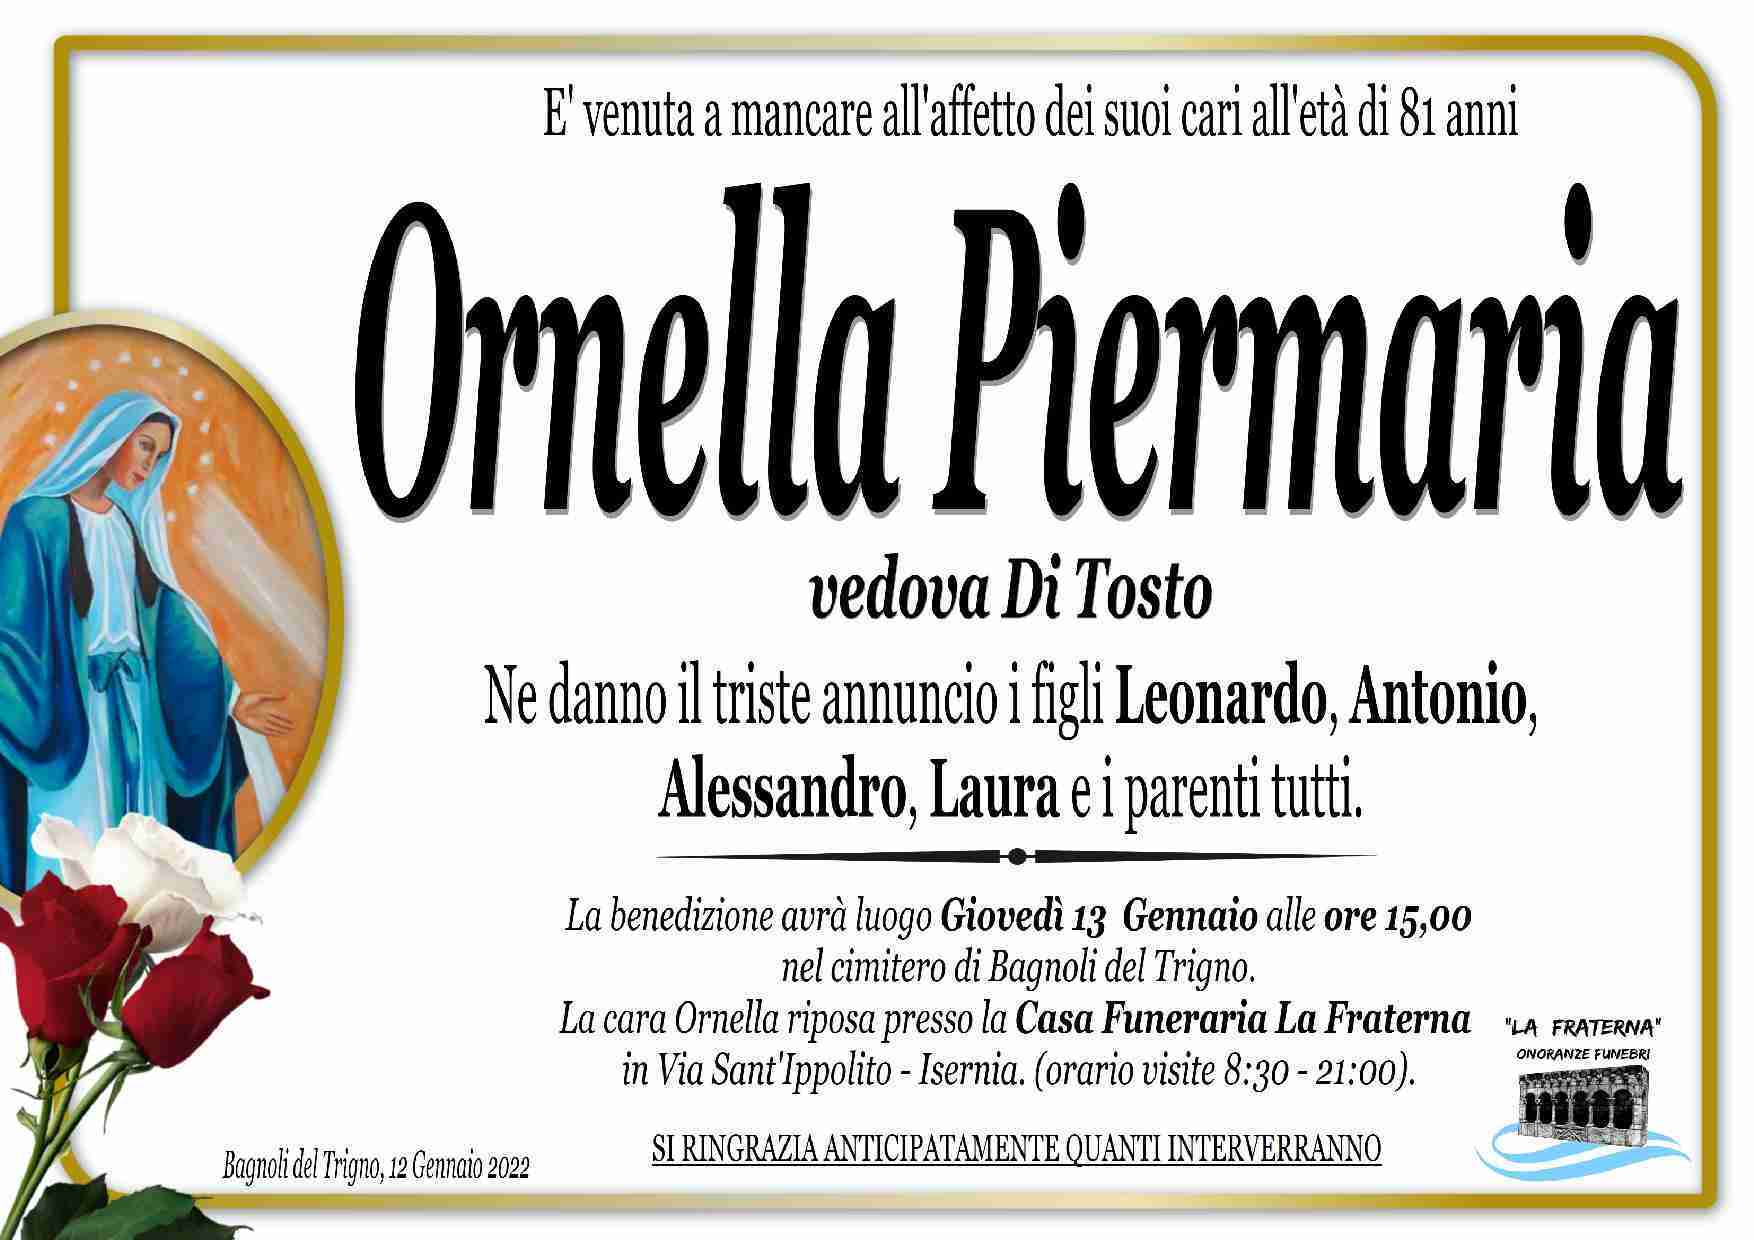 Ornella Piermaria